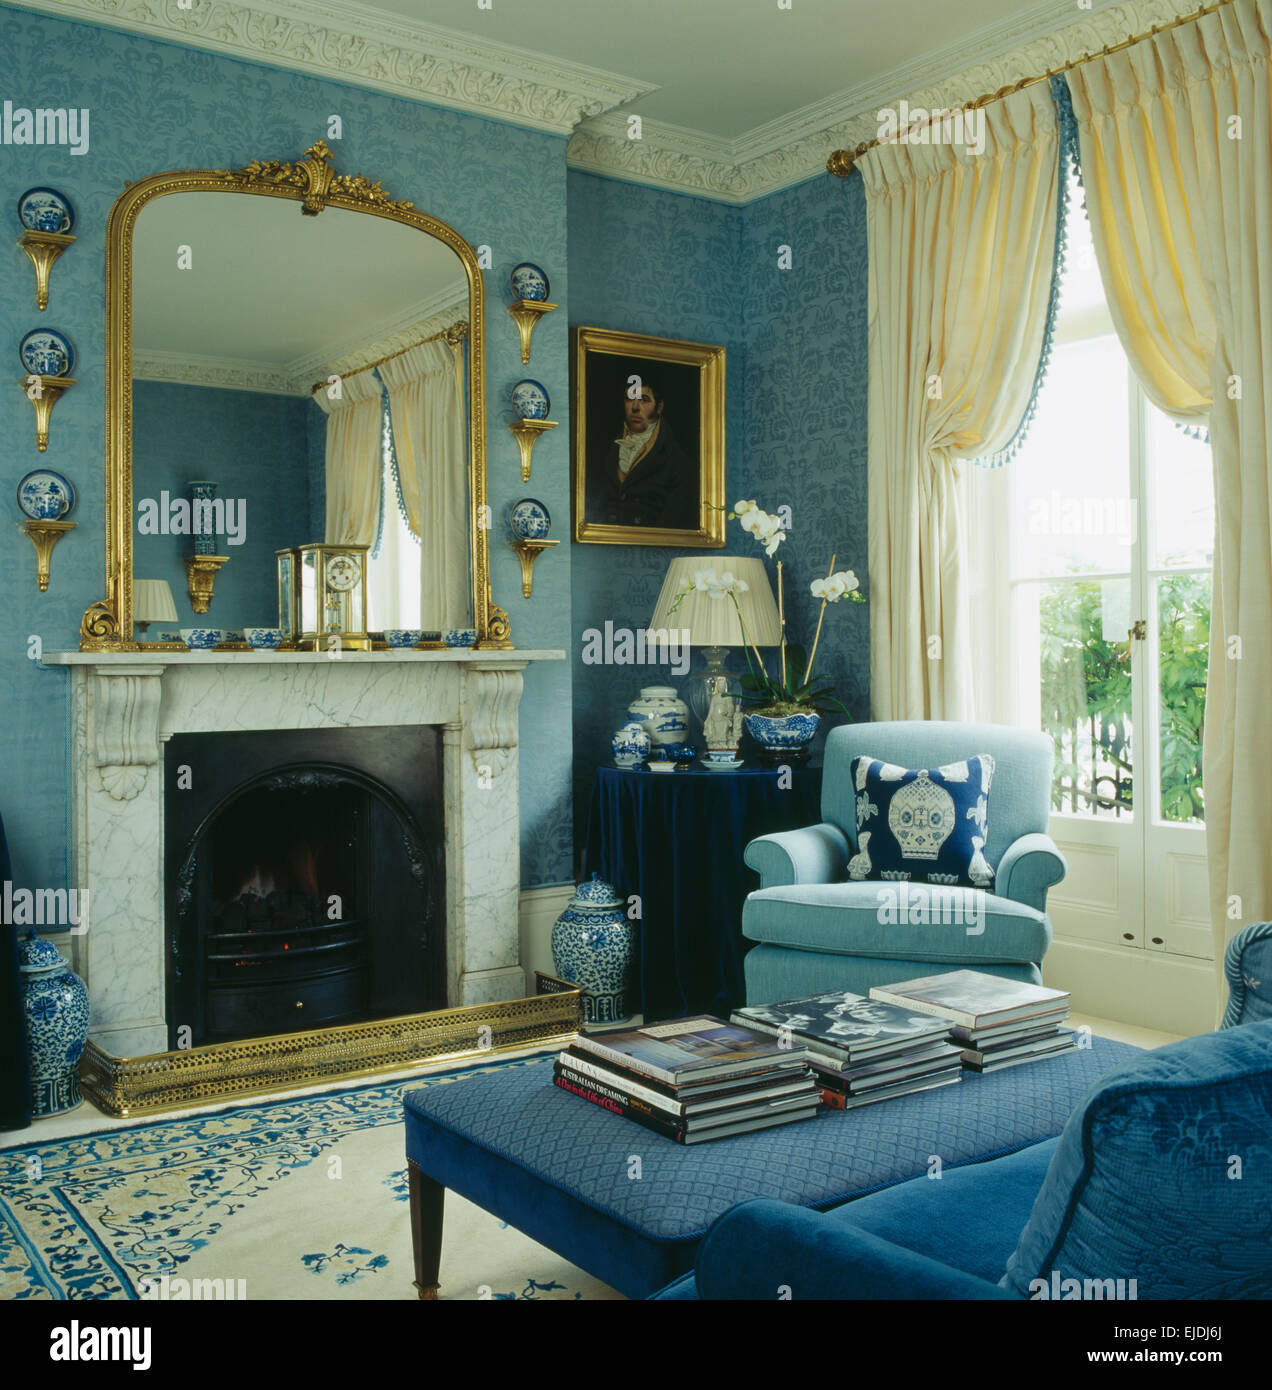 Grande specchio dorato sopra caminetto in marmo in blu la stanza di seduta con crema di tende sulla finestra Foto Stock